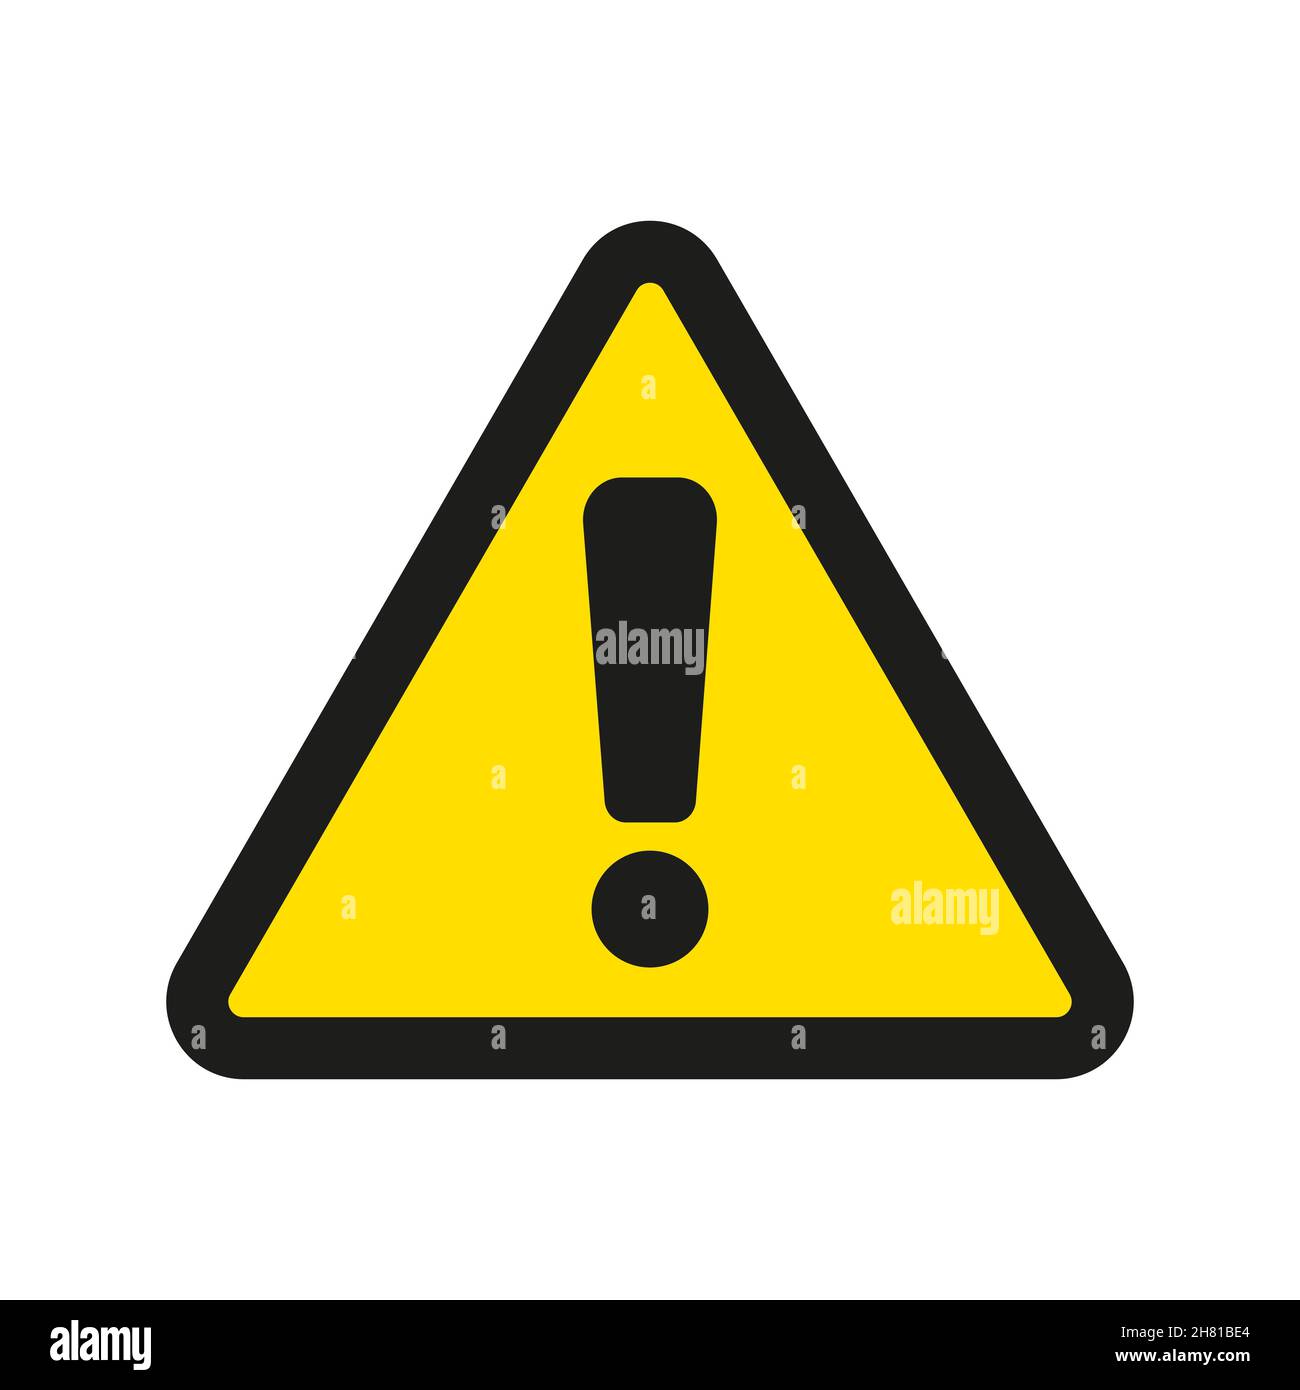 Warnblinker mit Ausrufezeichen auf weiß Stock-Vektorgrafik - Alamy